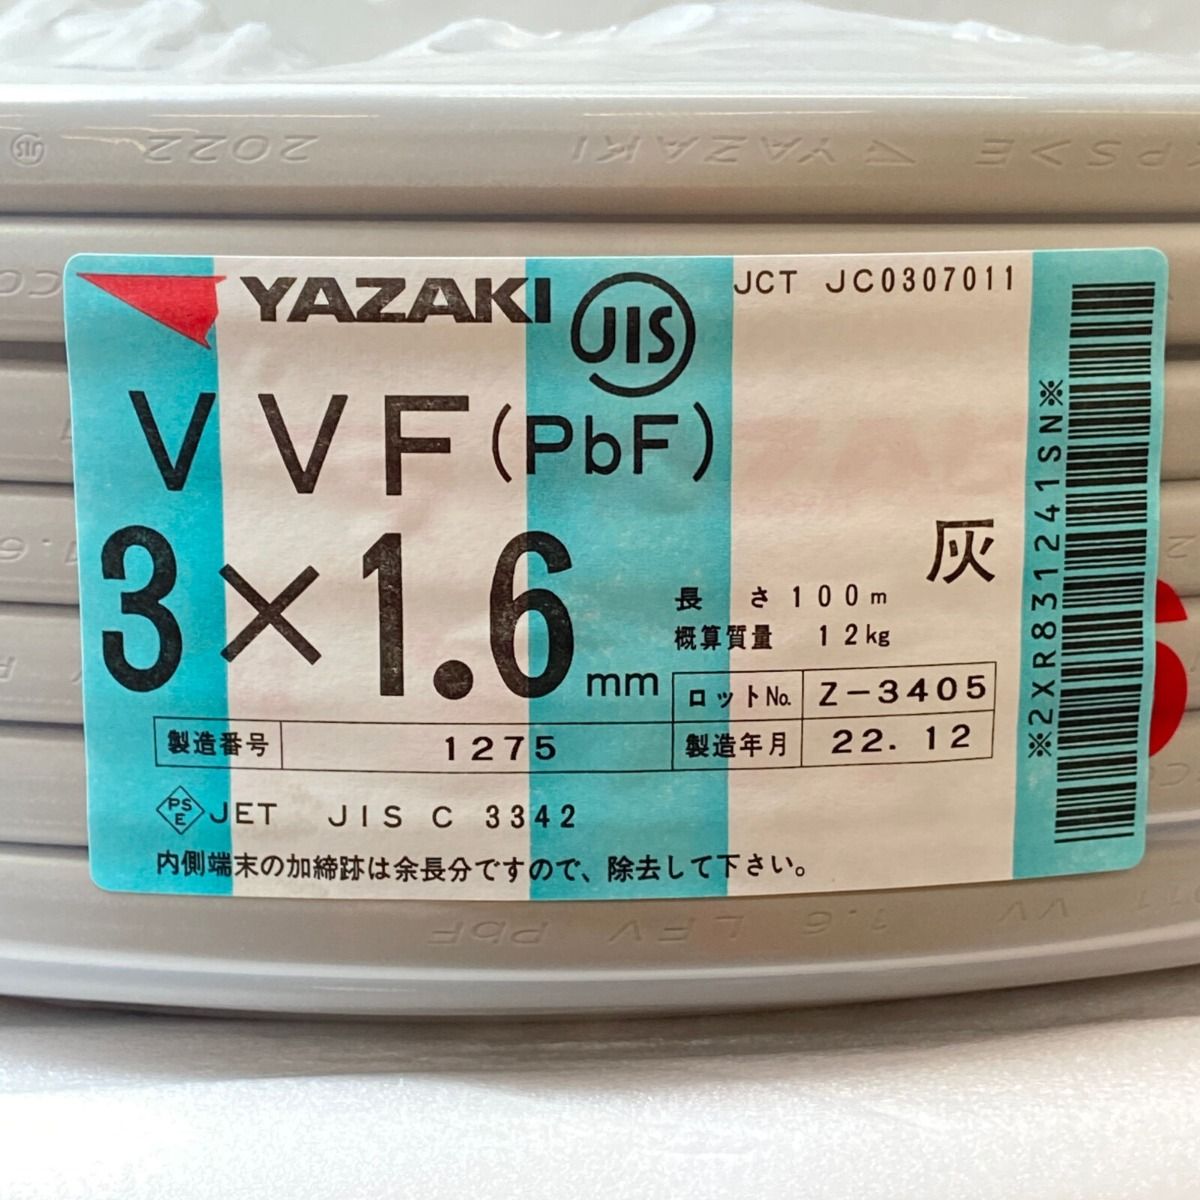 ΦΦYAZAKI VVFケーブル 平形 100m巻 灰色 VVF3×1.6 3芯 1275 - なんでも